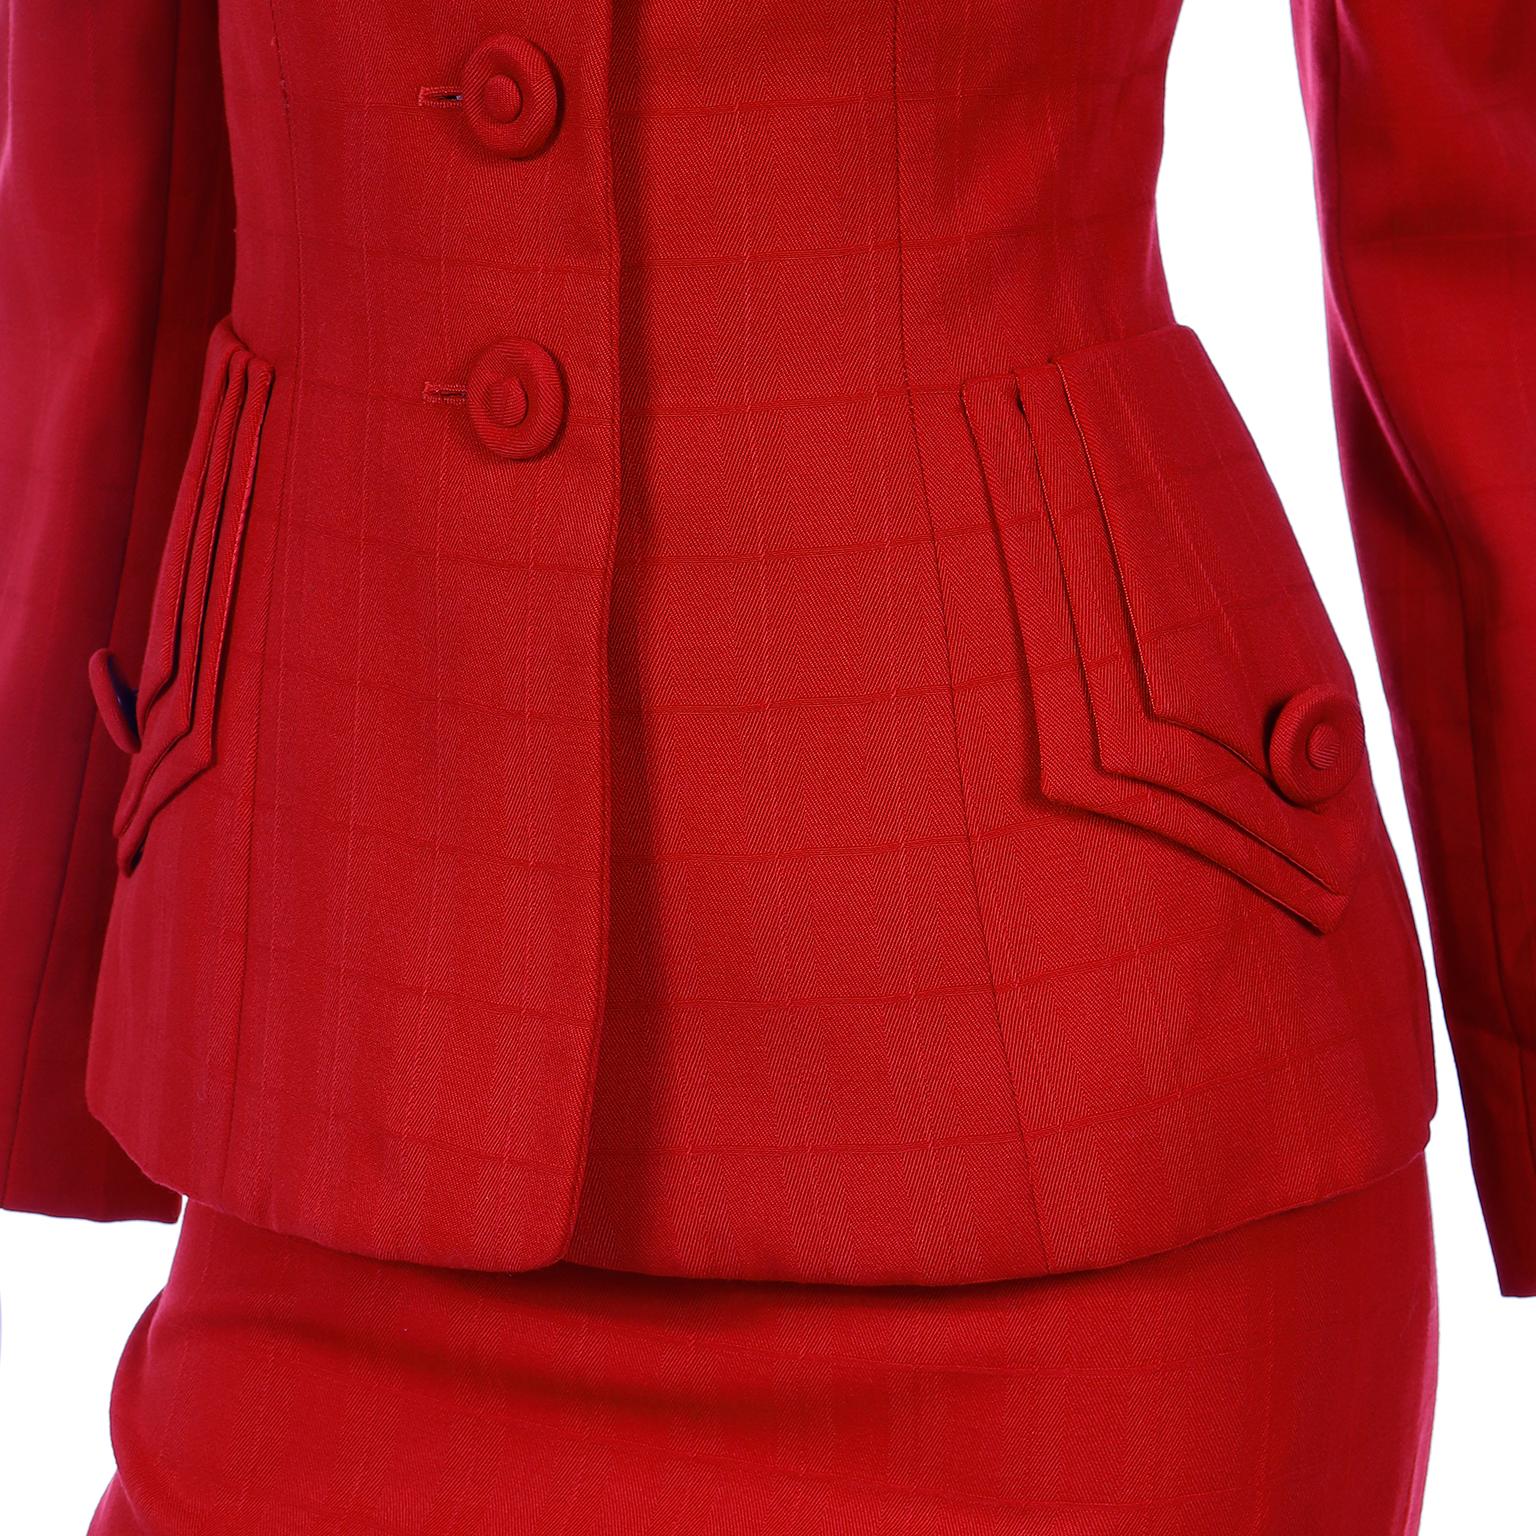 1988 Norma Kamali Windowpane Plaid Red Wool Suit w/ Lapel Cutouts 1